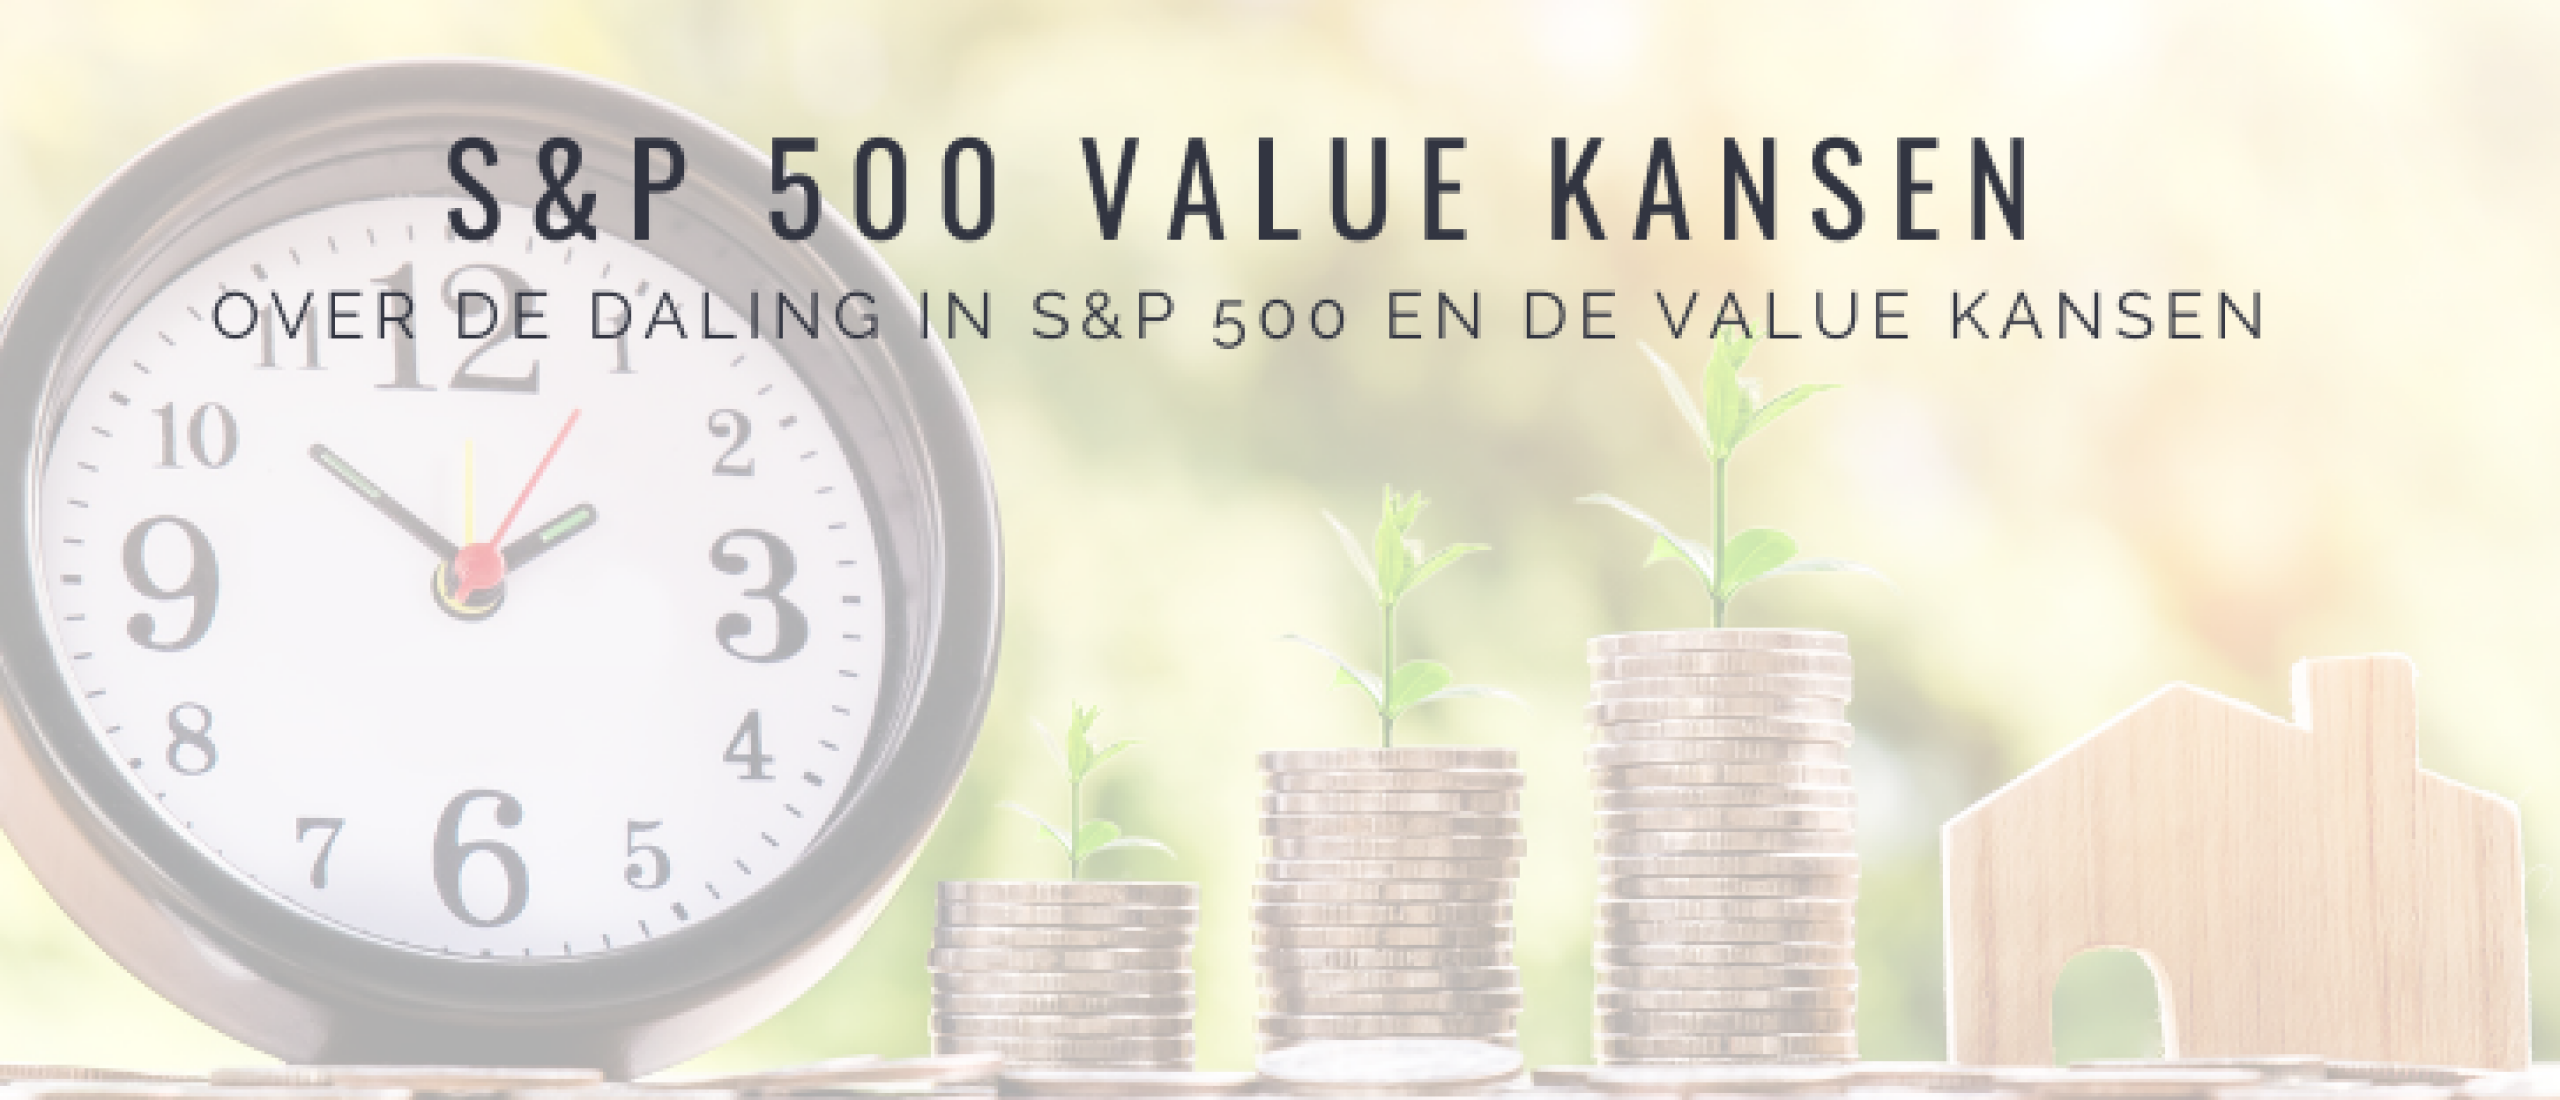 S&P 500 Value beleggen in 2022: Value kansen nemen toe